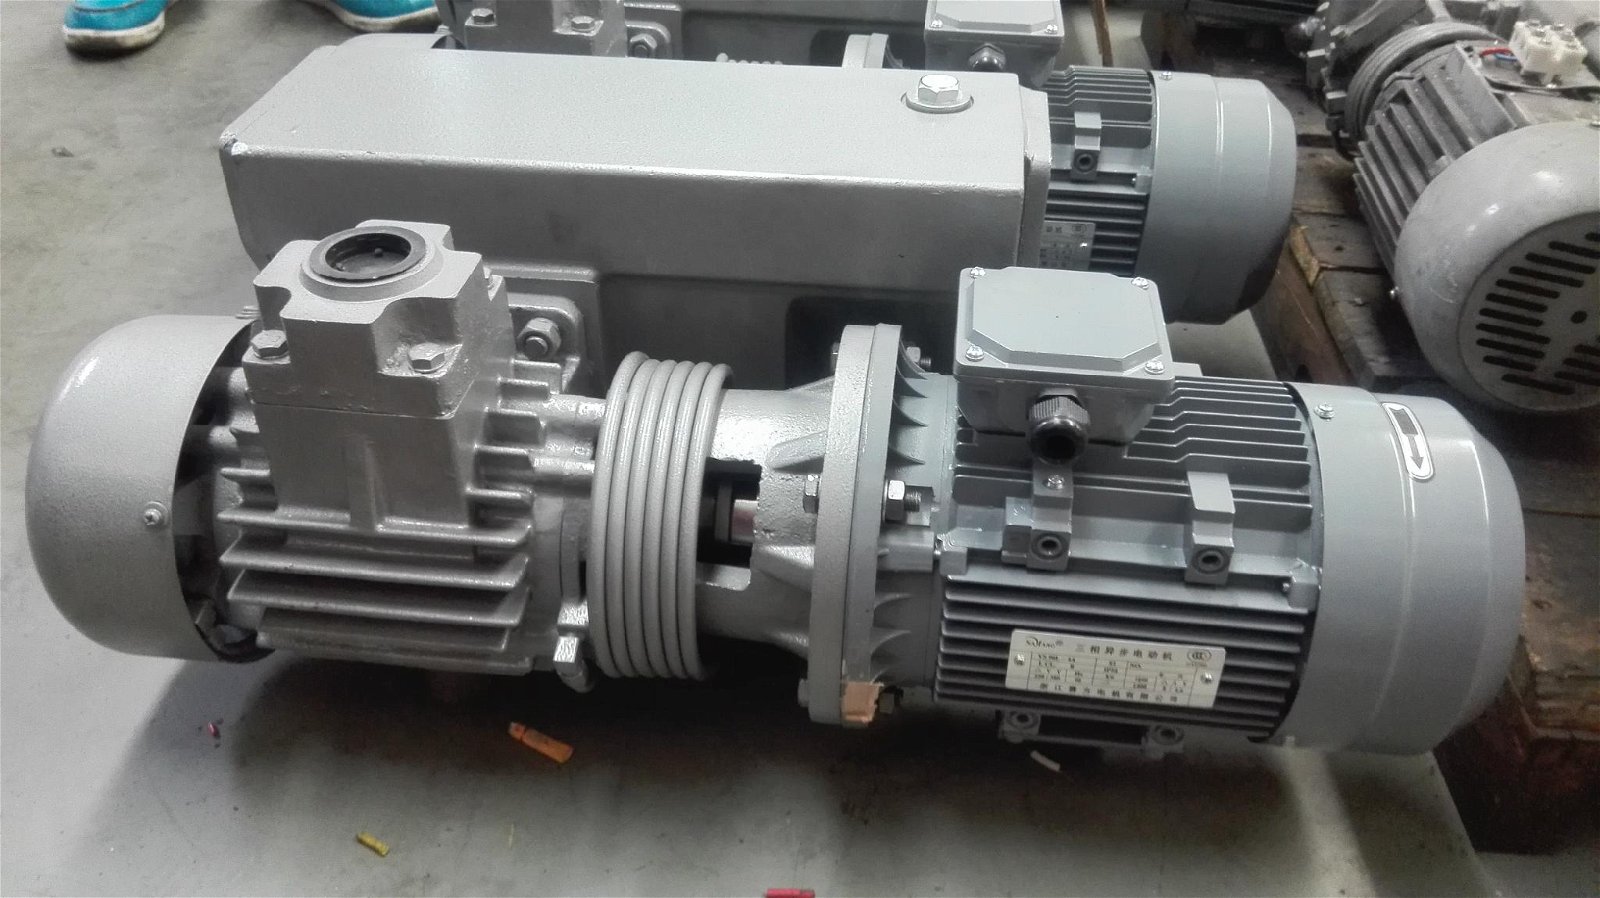  XD-063 vacuum pump.